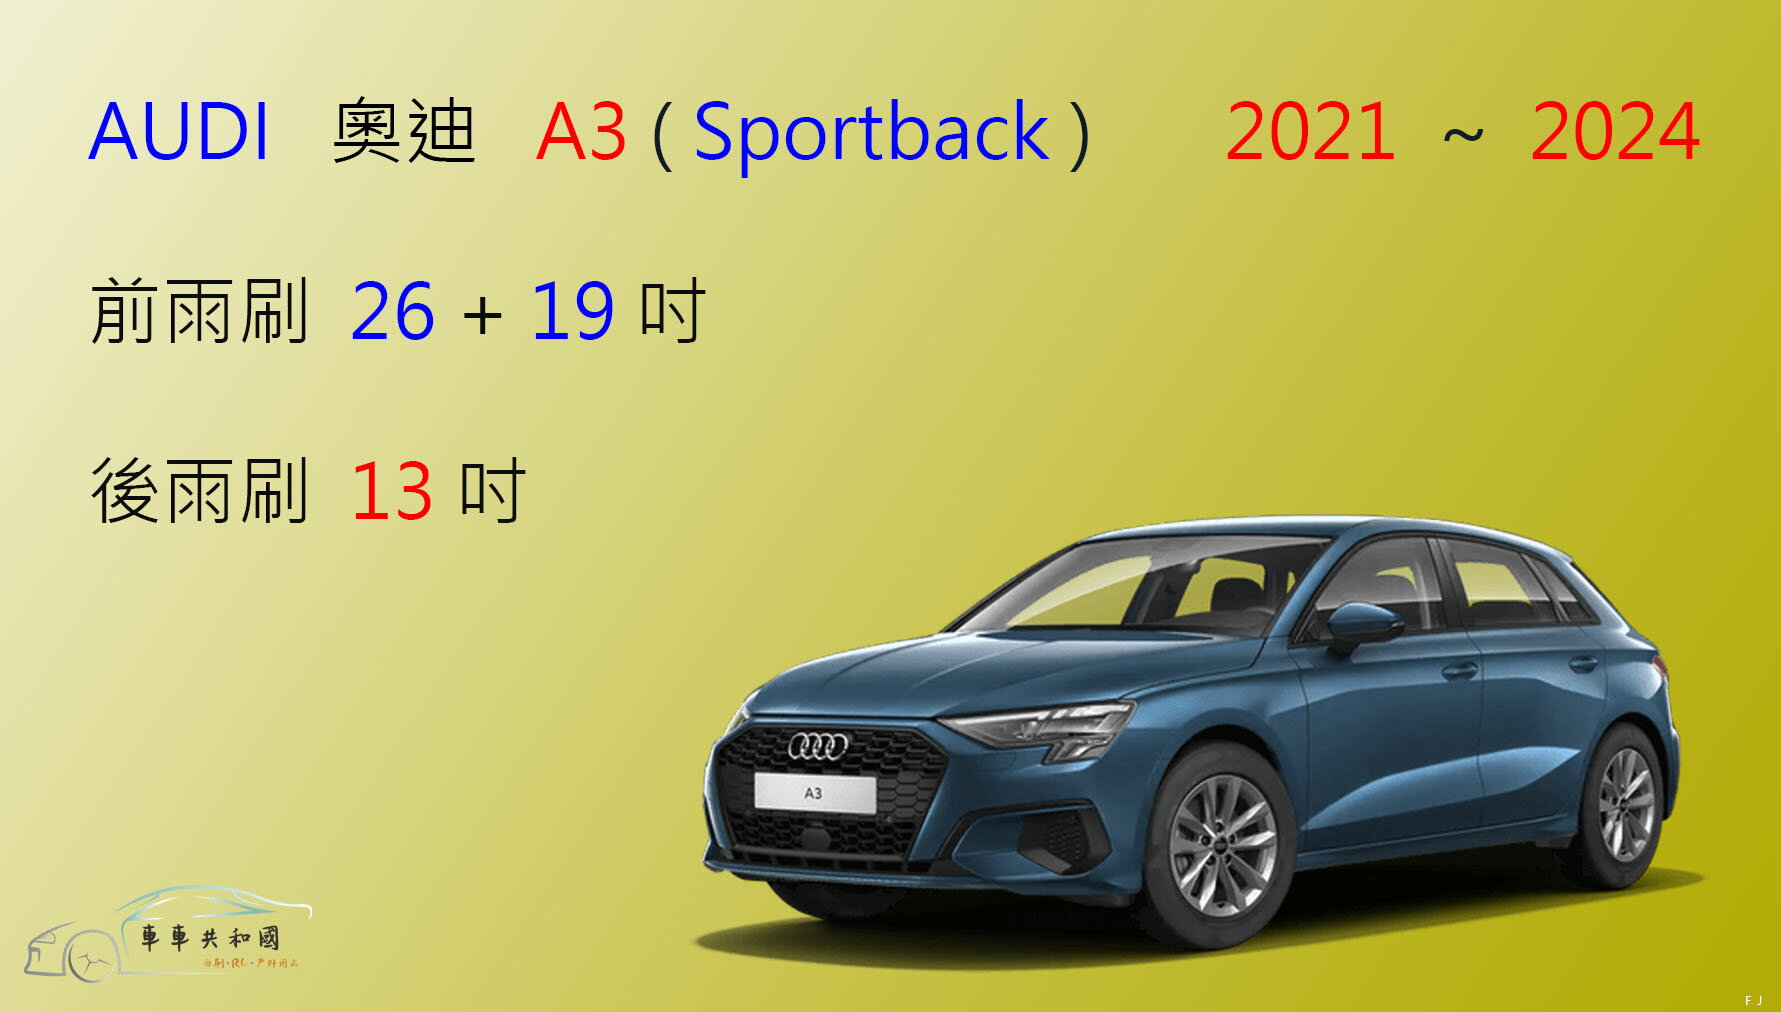 【車車共和國】Audi 奧迪 A3 (Sportback) 2021年後 矽膠雨刷 軟骨雨刷 後雨刷 雨刷錠